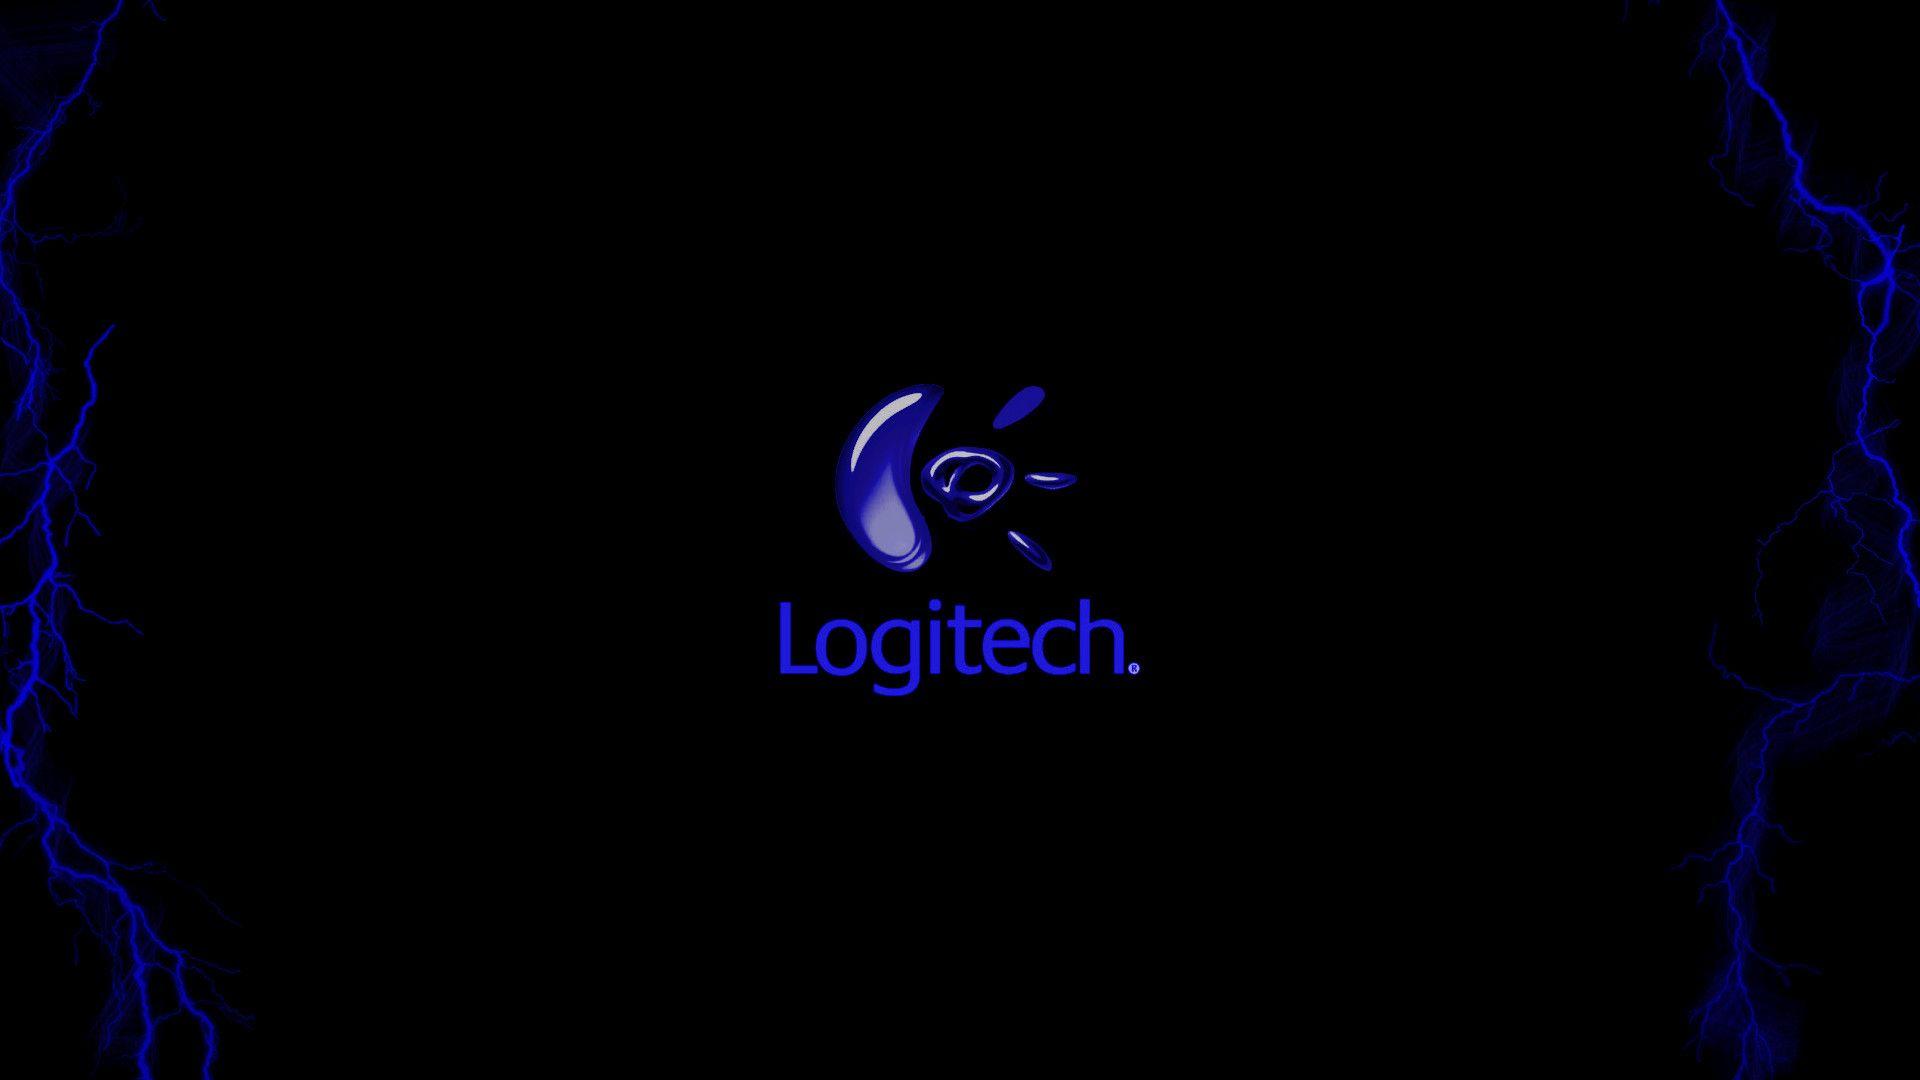 Logitech 4k Wallpapers Top Free Logitech 4k Backgrounds Wallpaperaccess